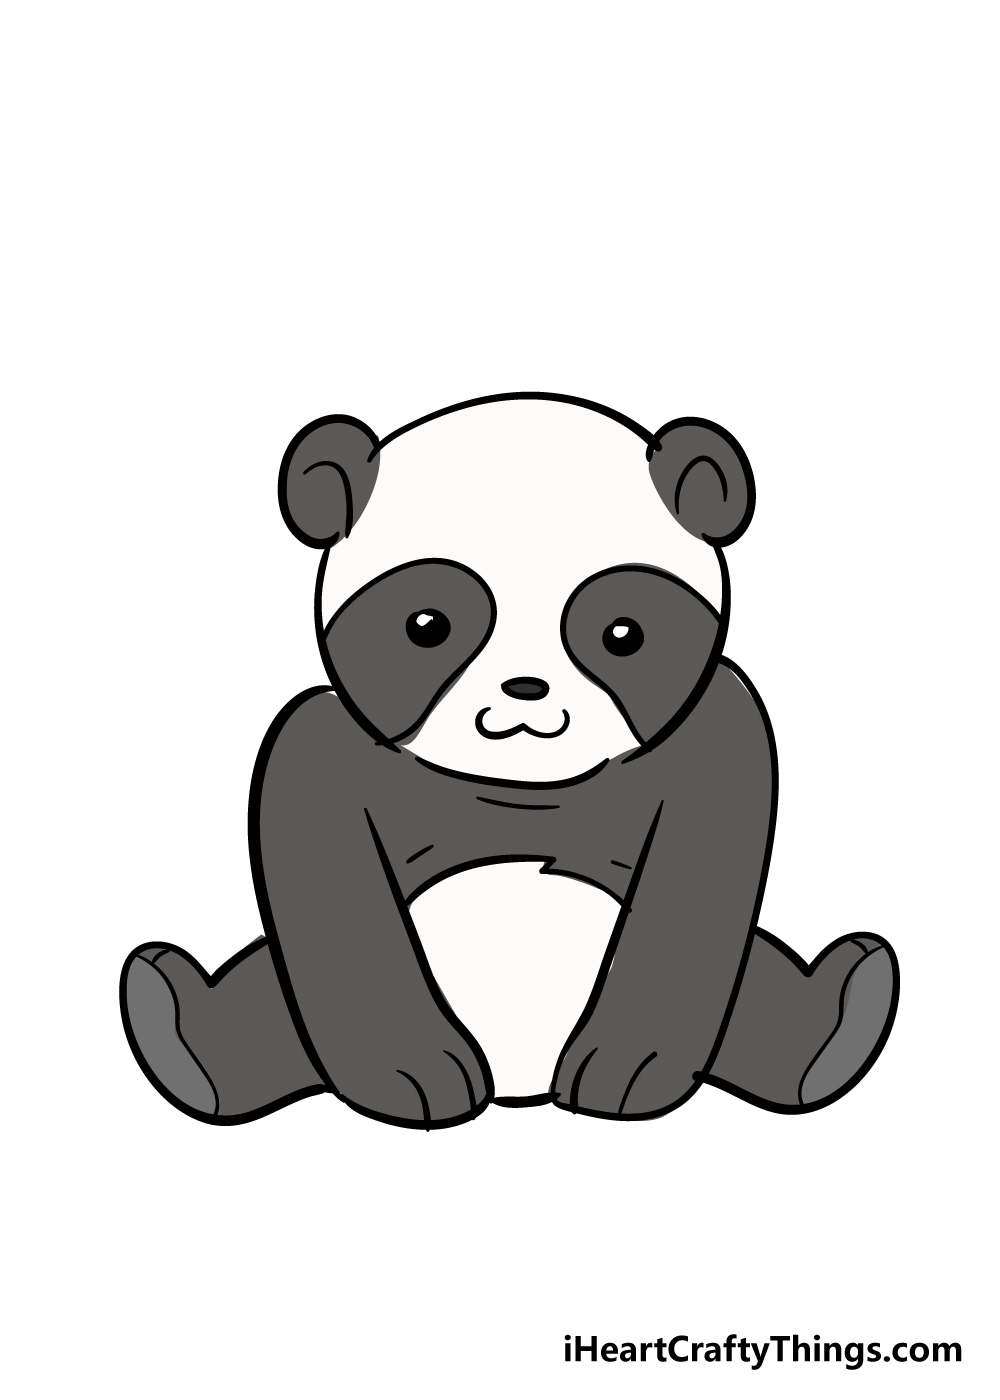 Panda7 - Hướng dẫn chi tiết cách vẽ con gấu trúc cute dễ thương với 7 bước đơn giản